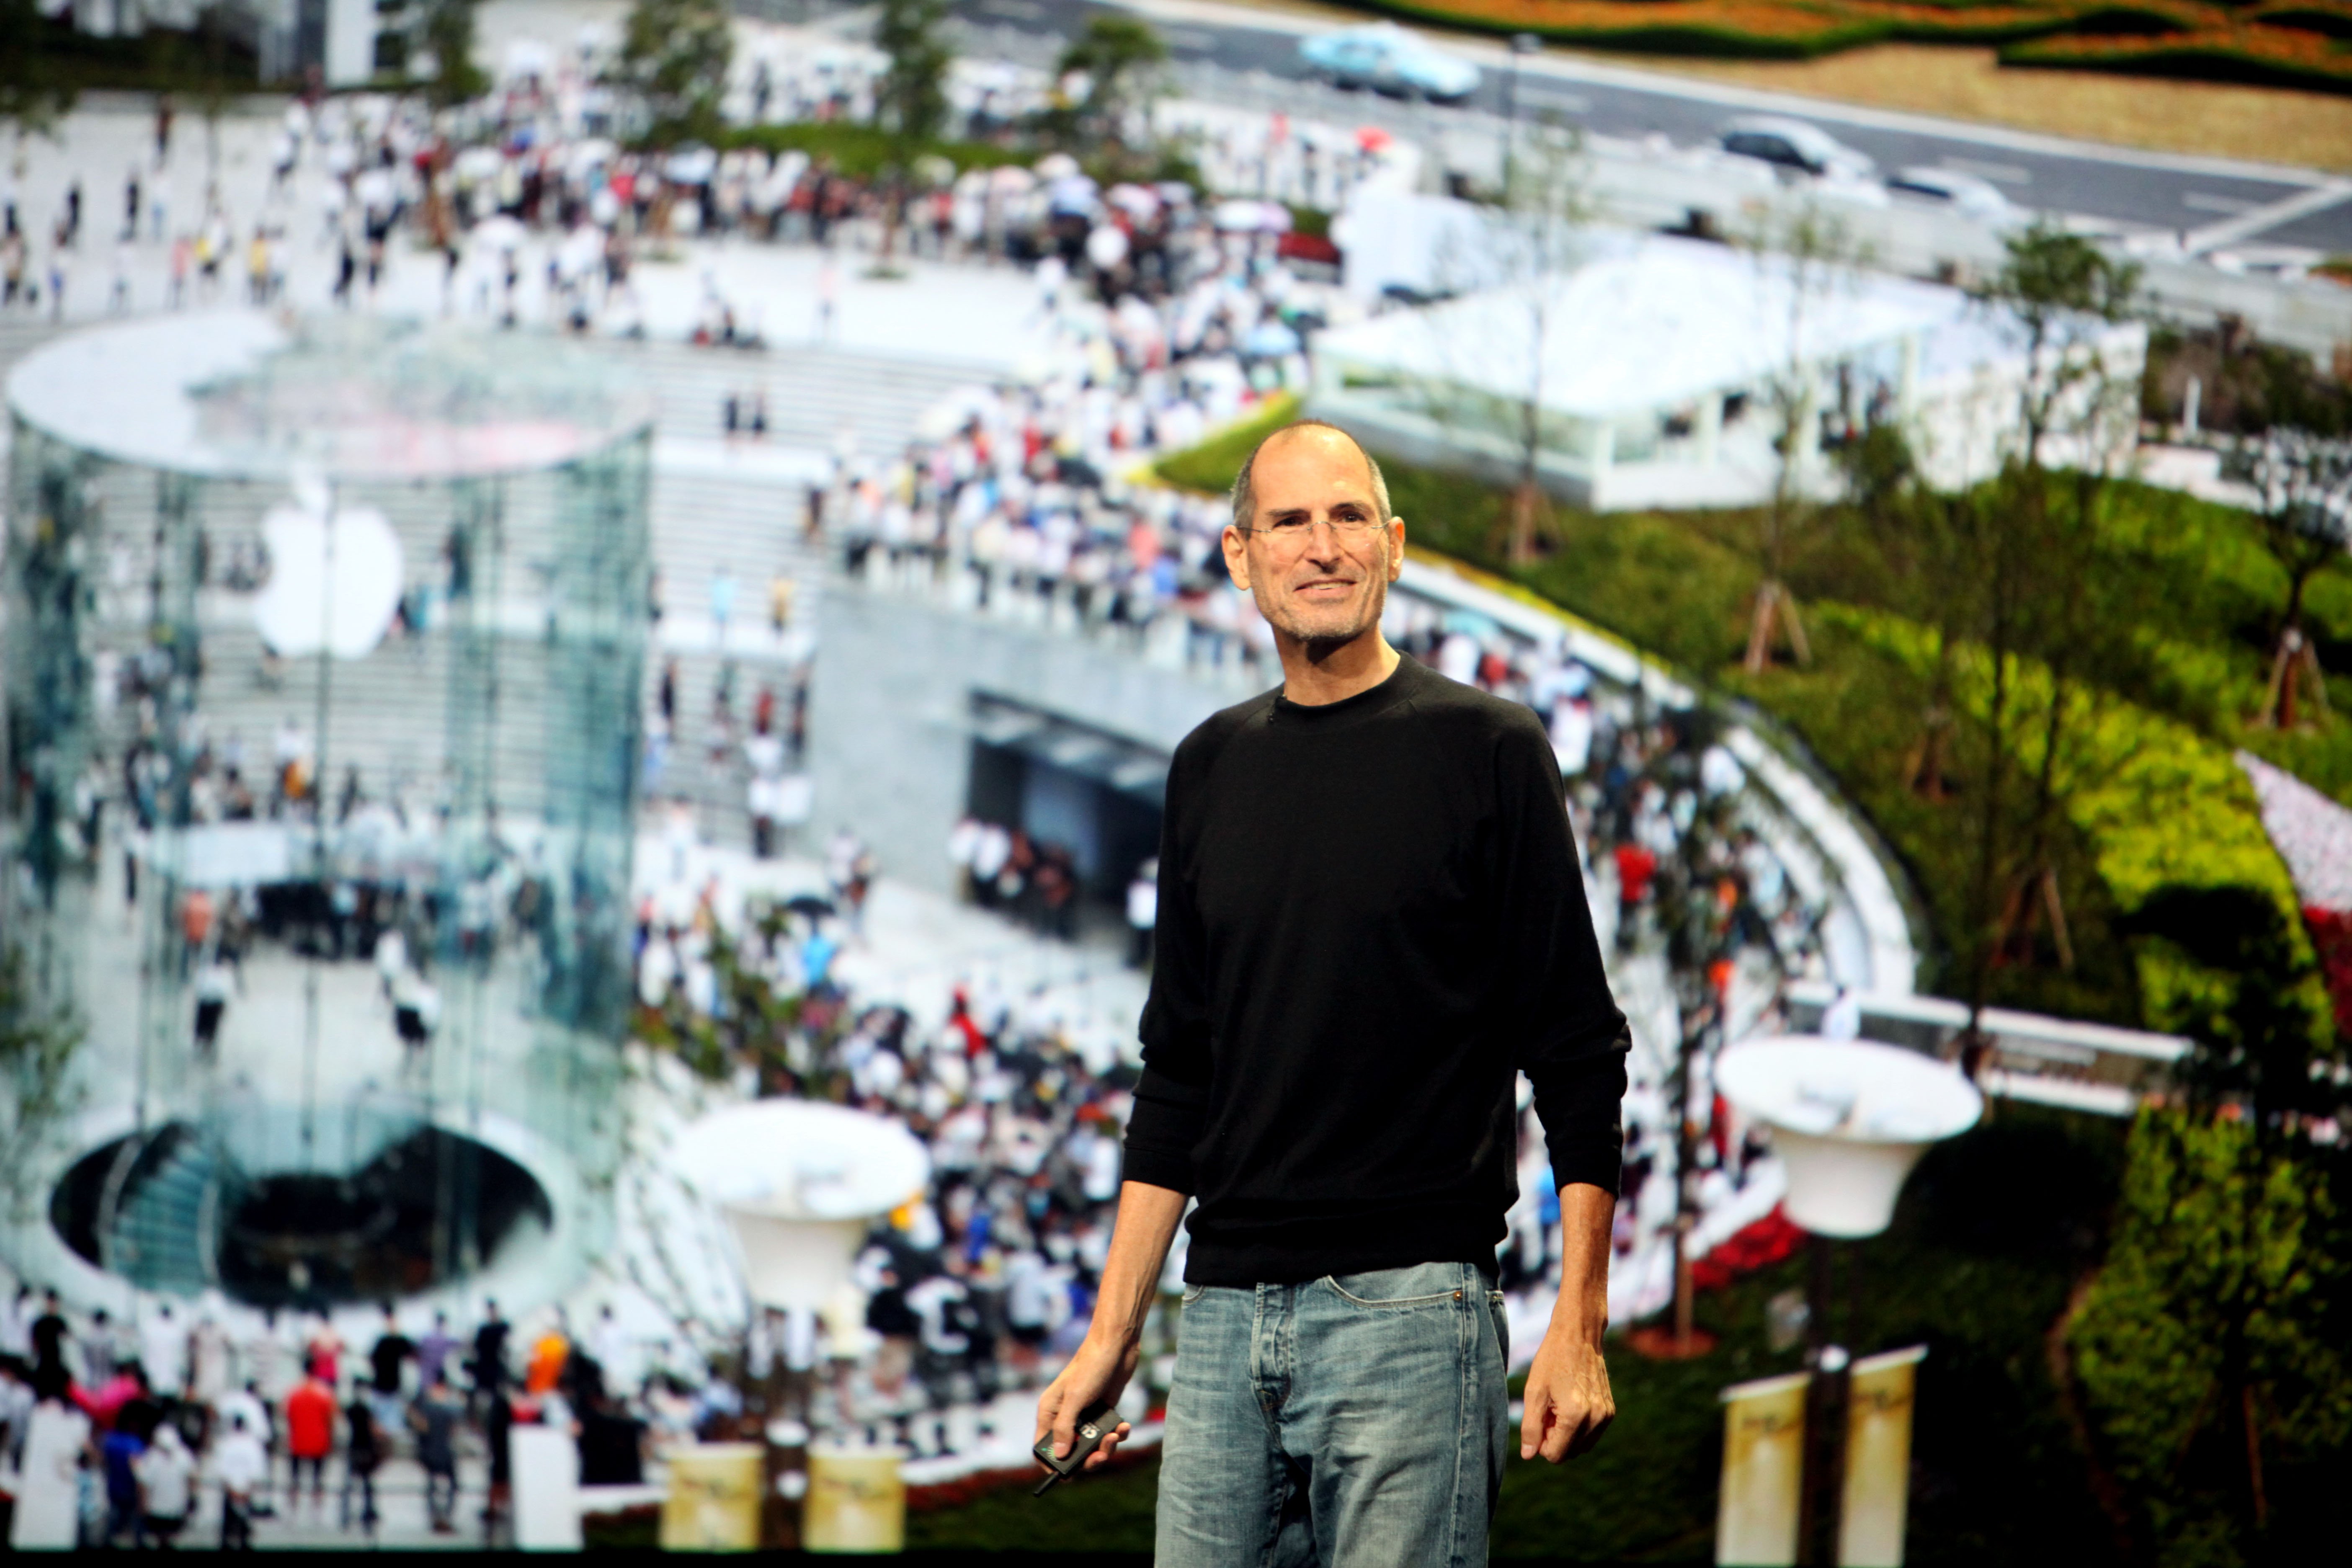 Apple'ın ürün tanıtımları Steve Jobs'un şovmenliğini gösterdiği sahnelere dönüşmüştü